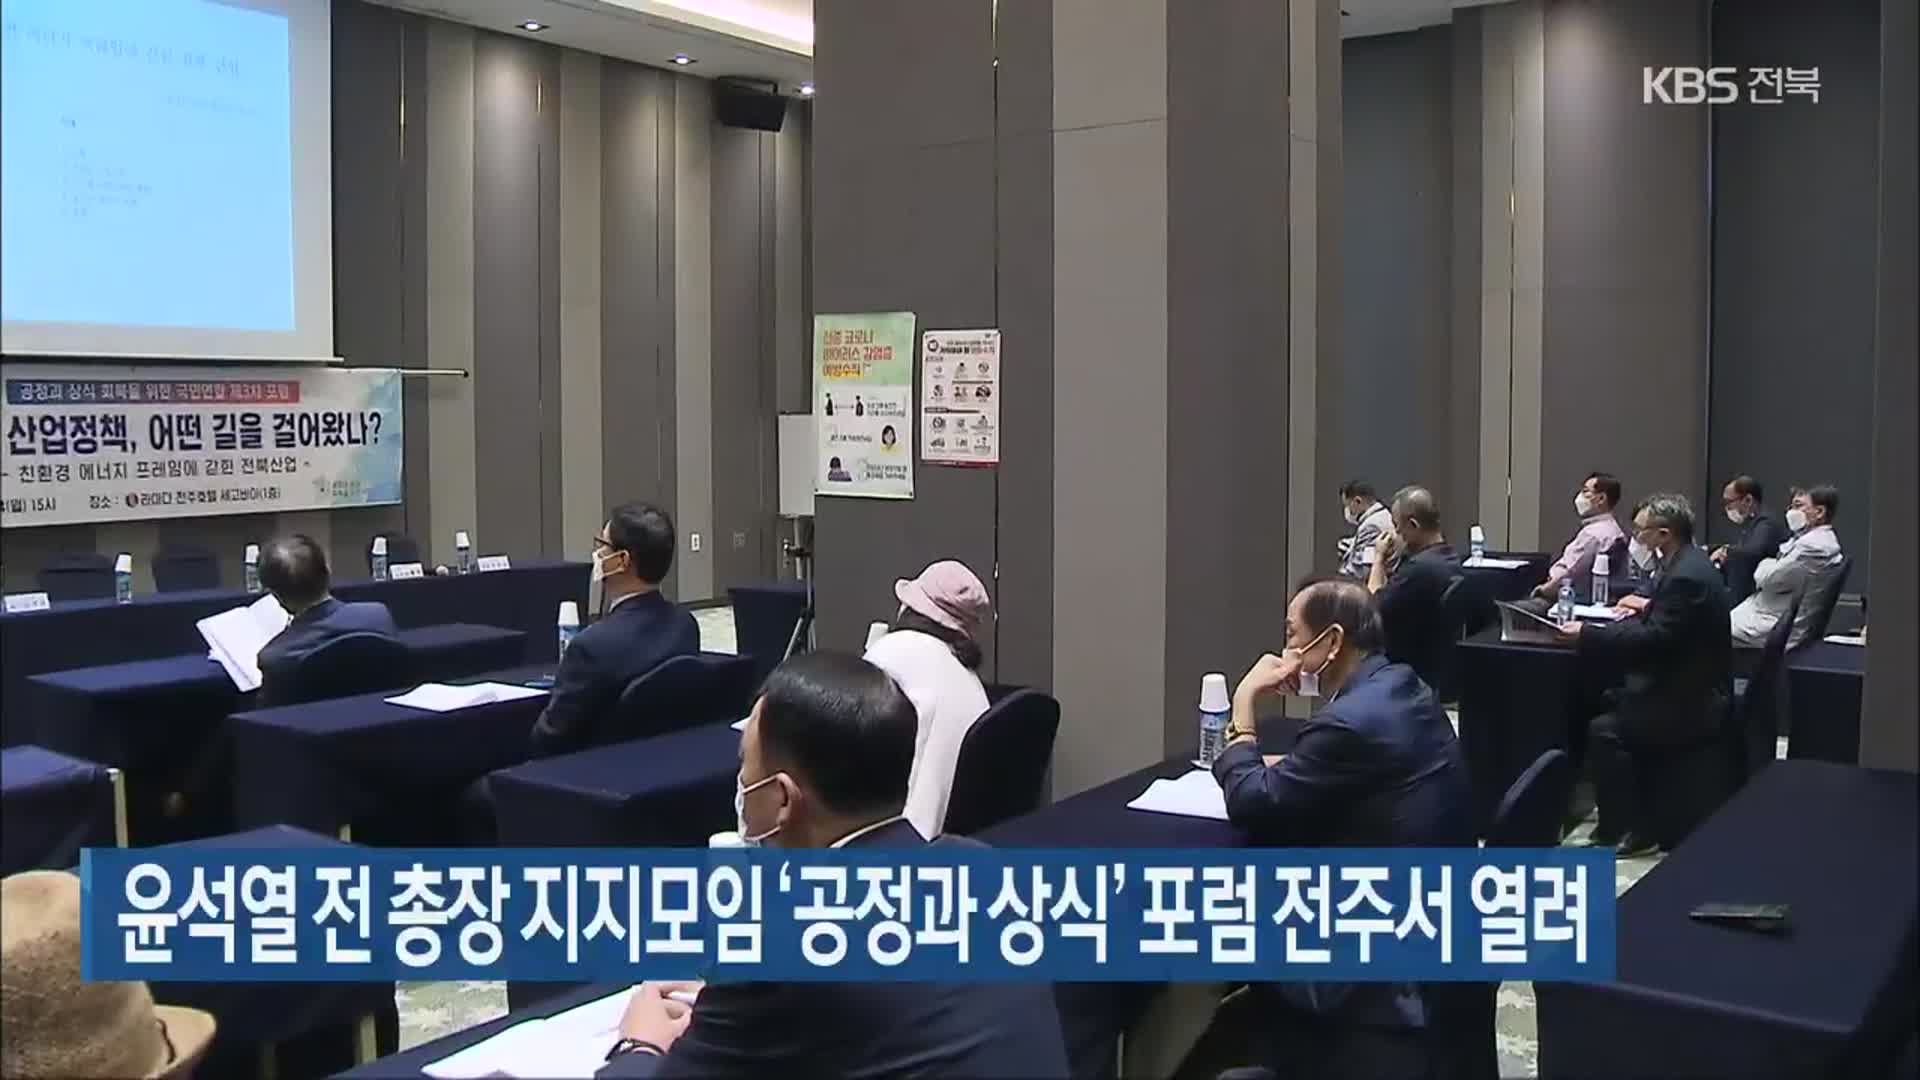 윤석열 전 총장 지지모임 ‘공정과 상식’ 포럼 전주서 열려